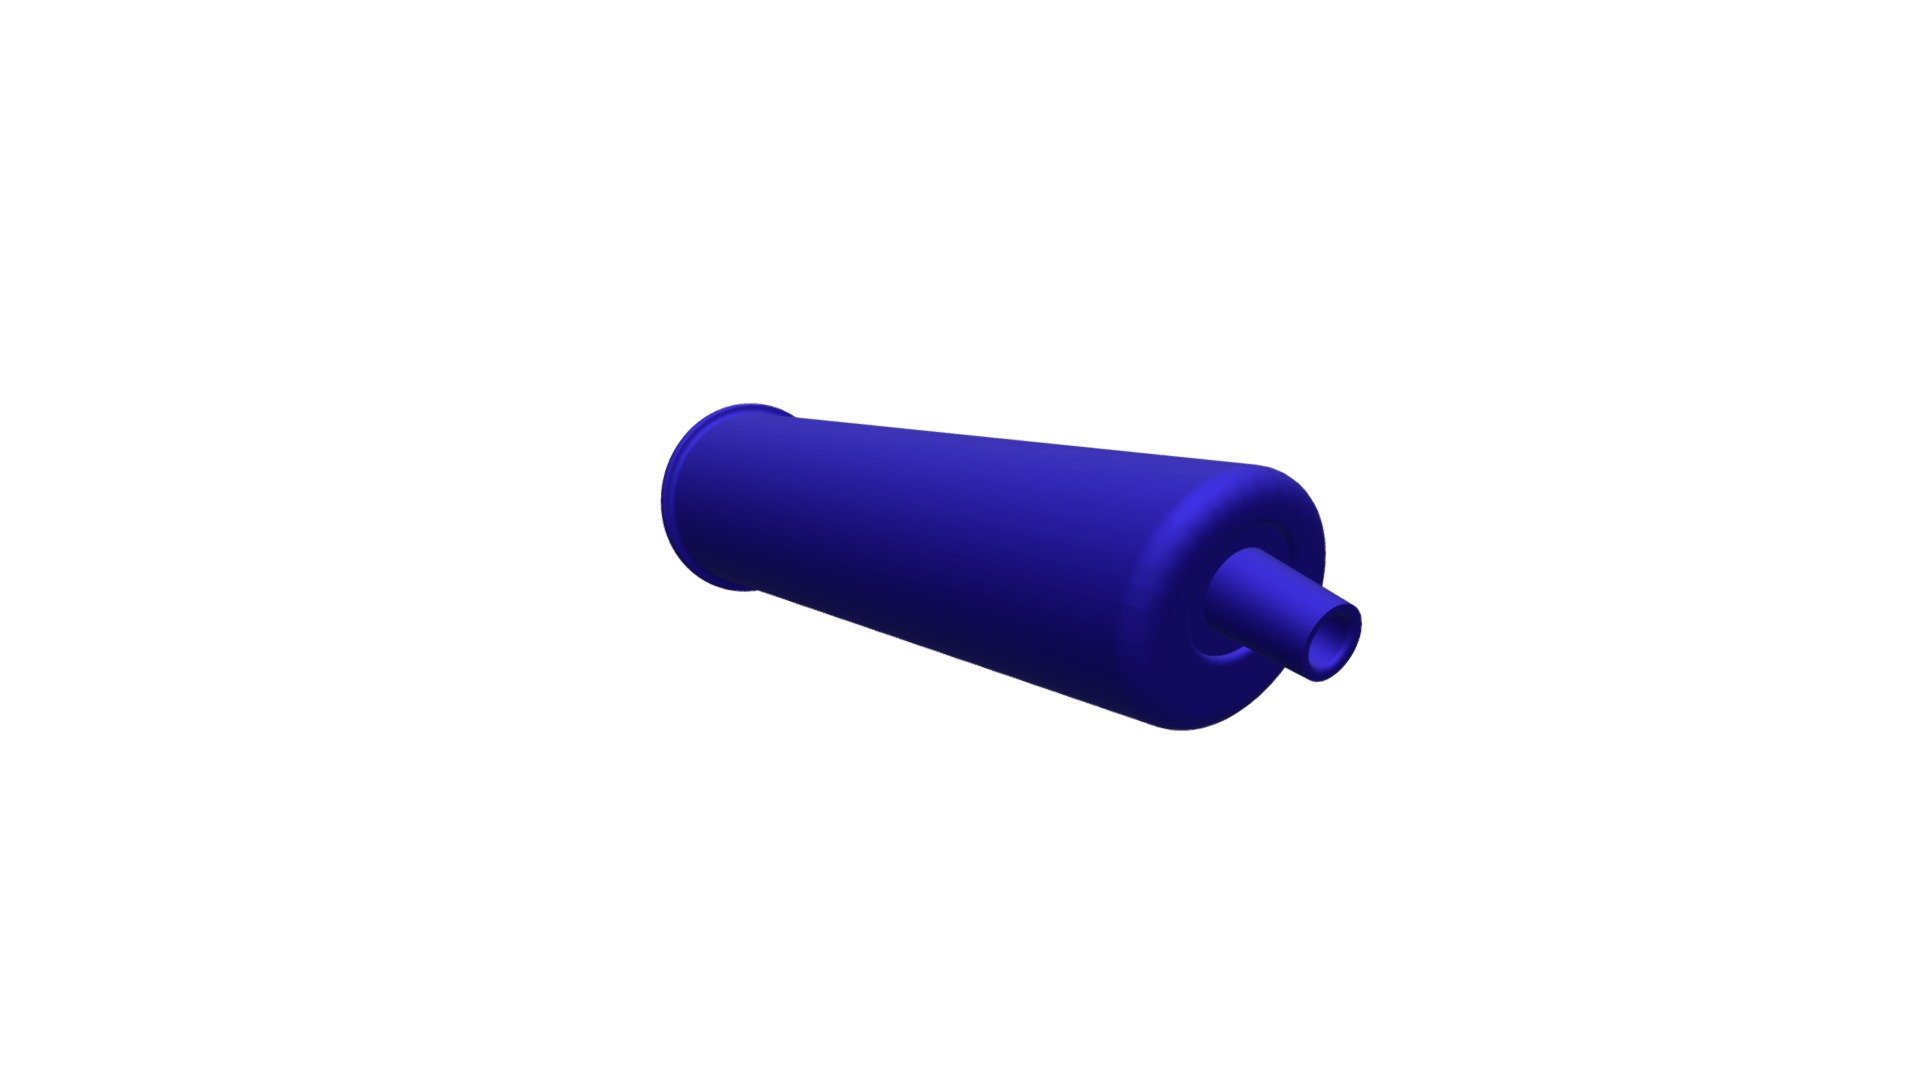 Giant Mouthpiece - Download Free 3D model by glasslung [5da92de ...